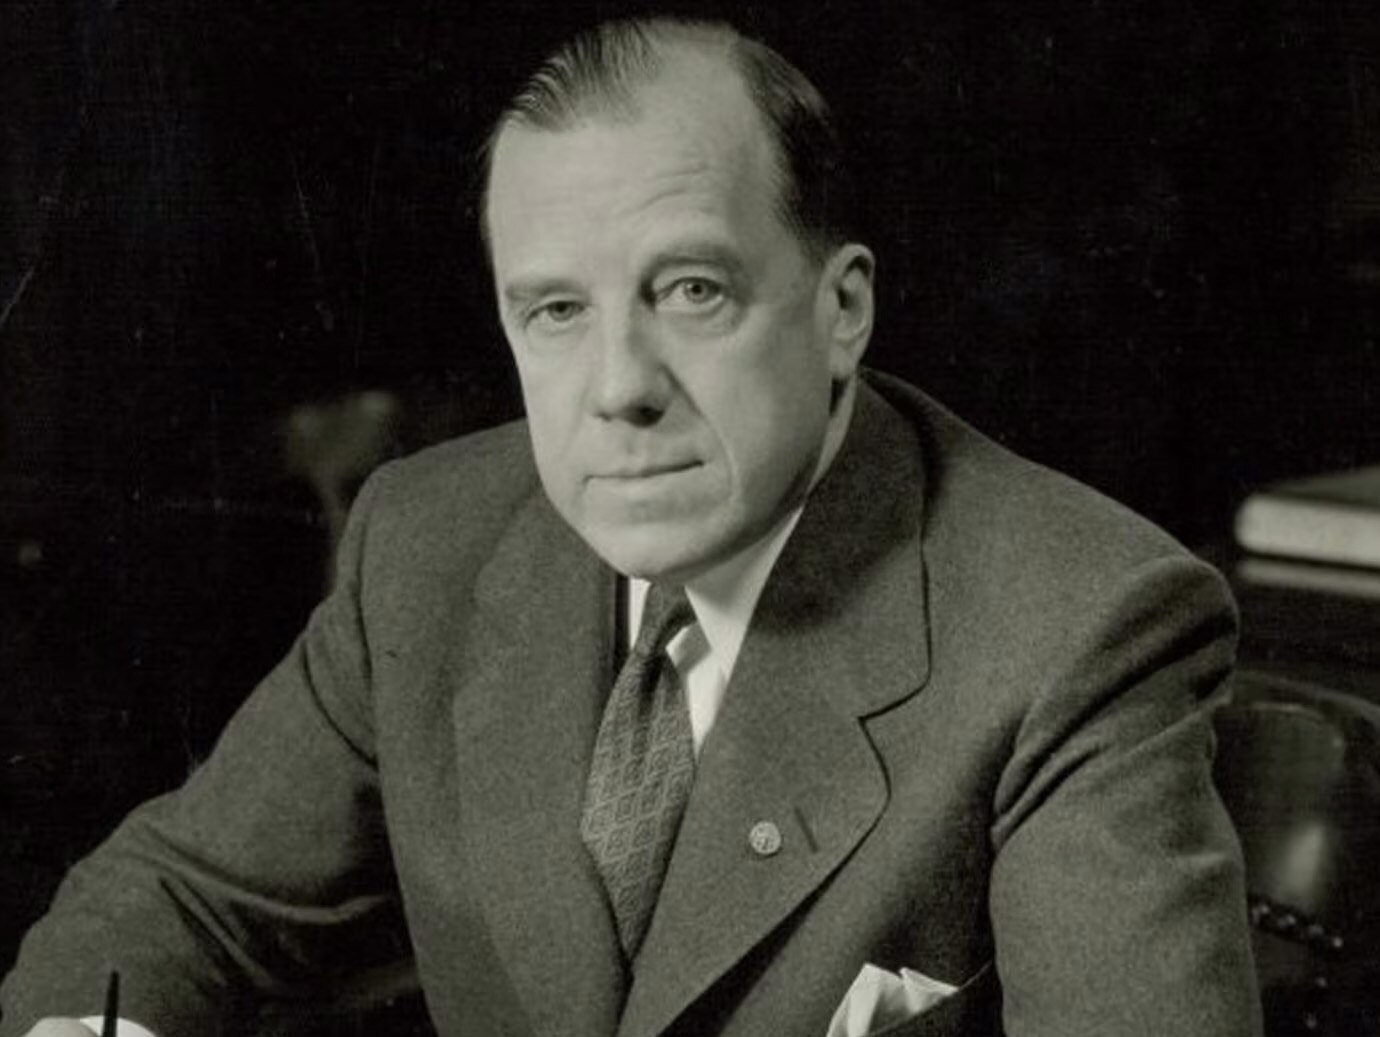 Joseph Cutler, President, 1938-1960